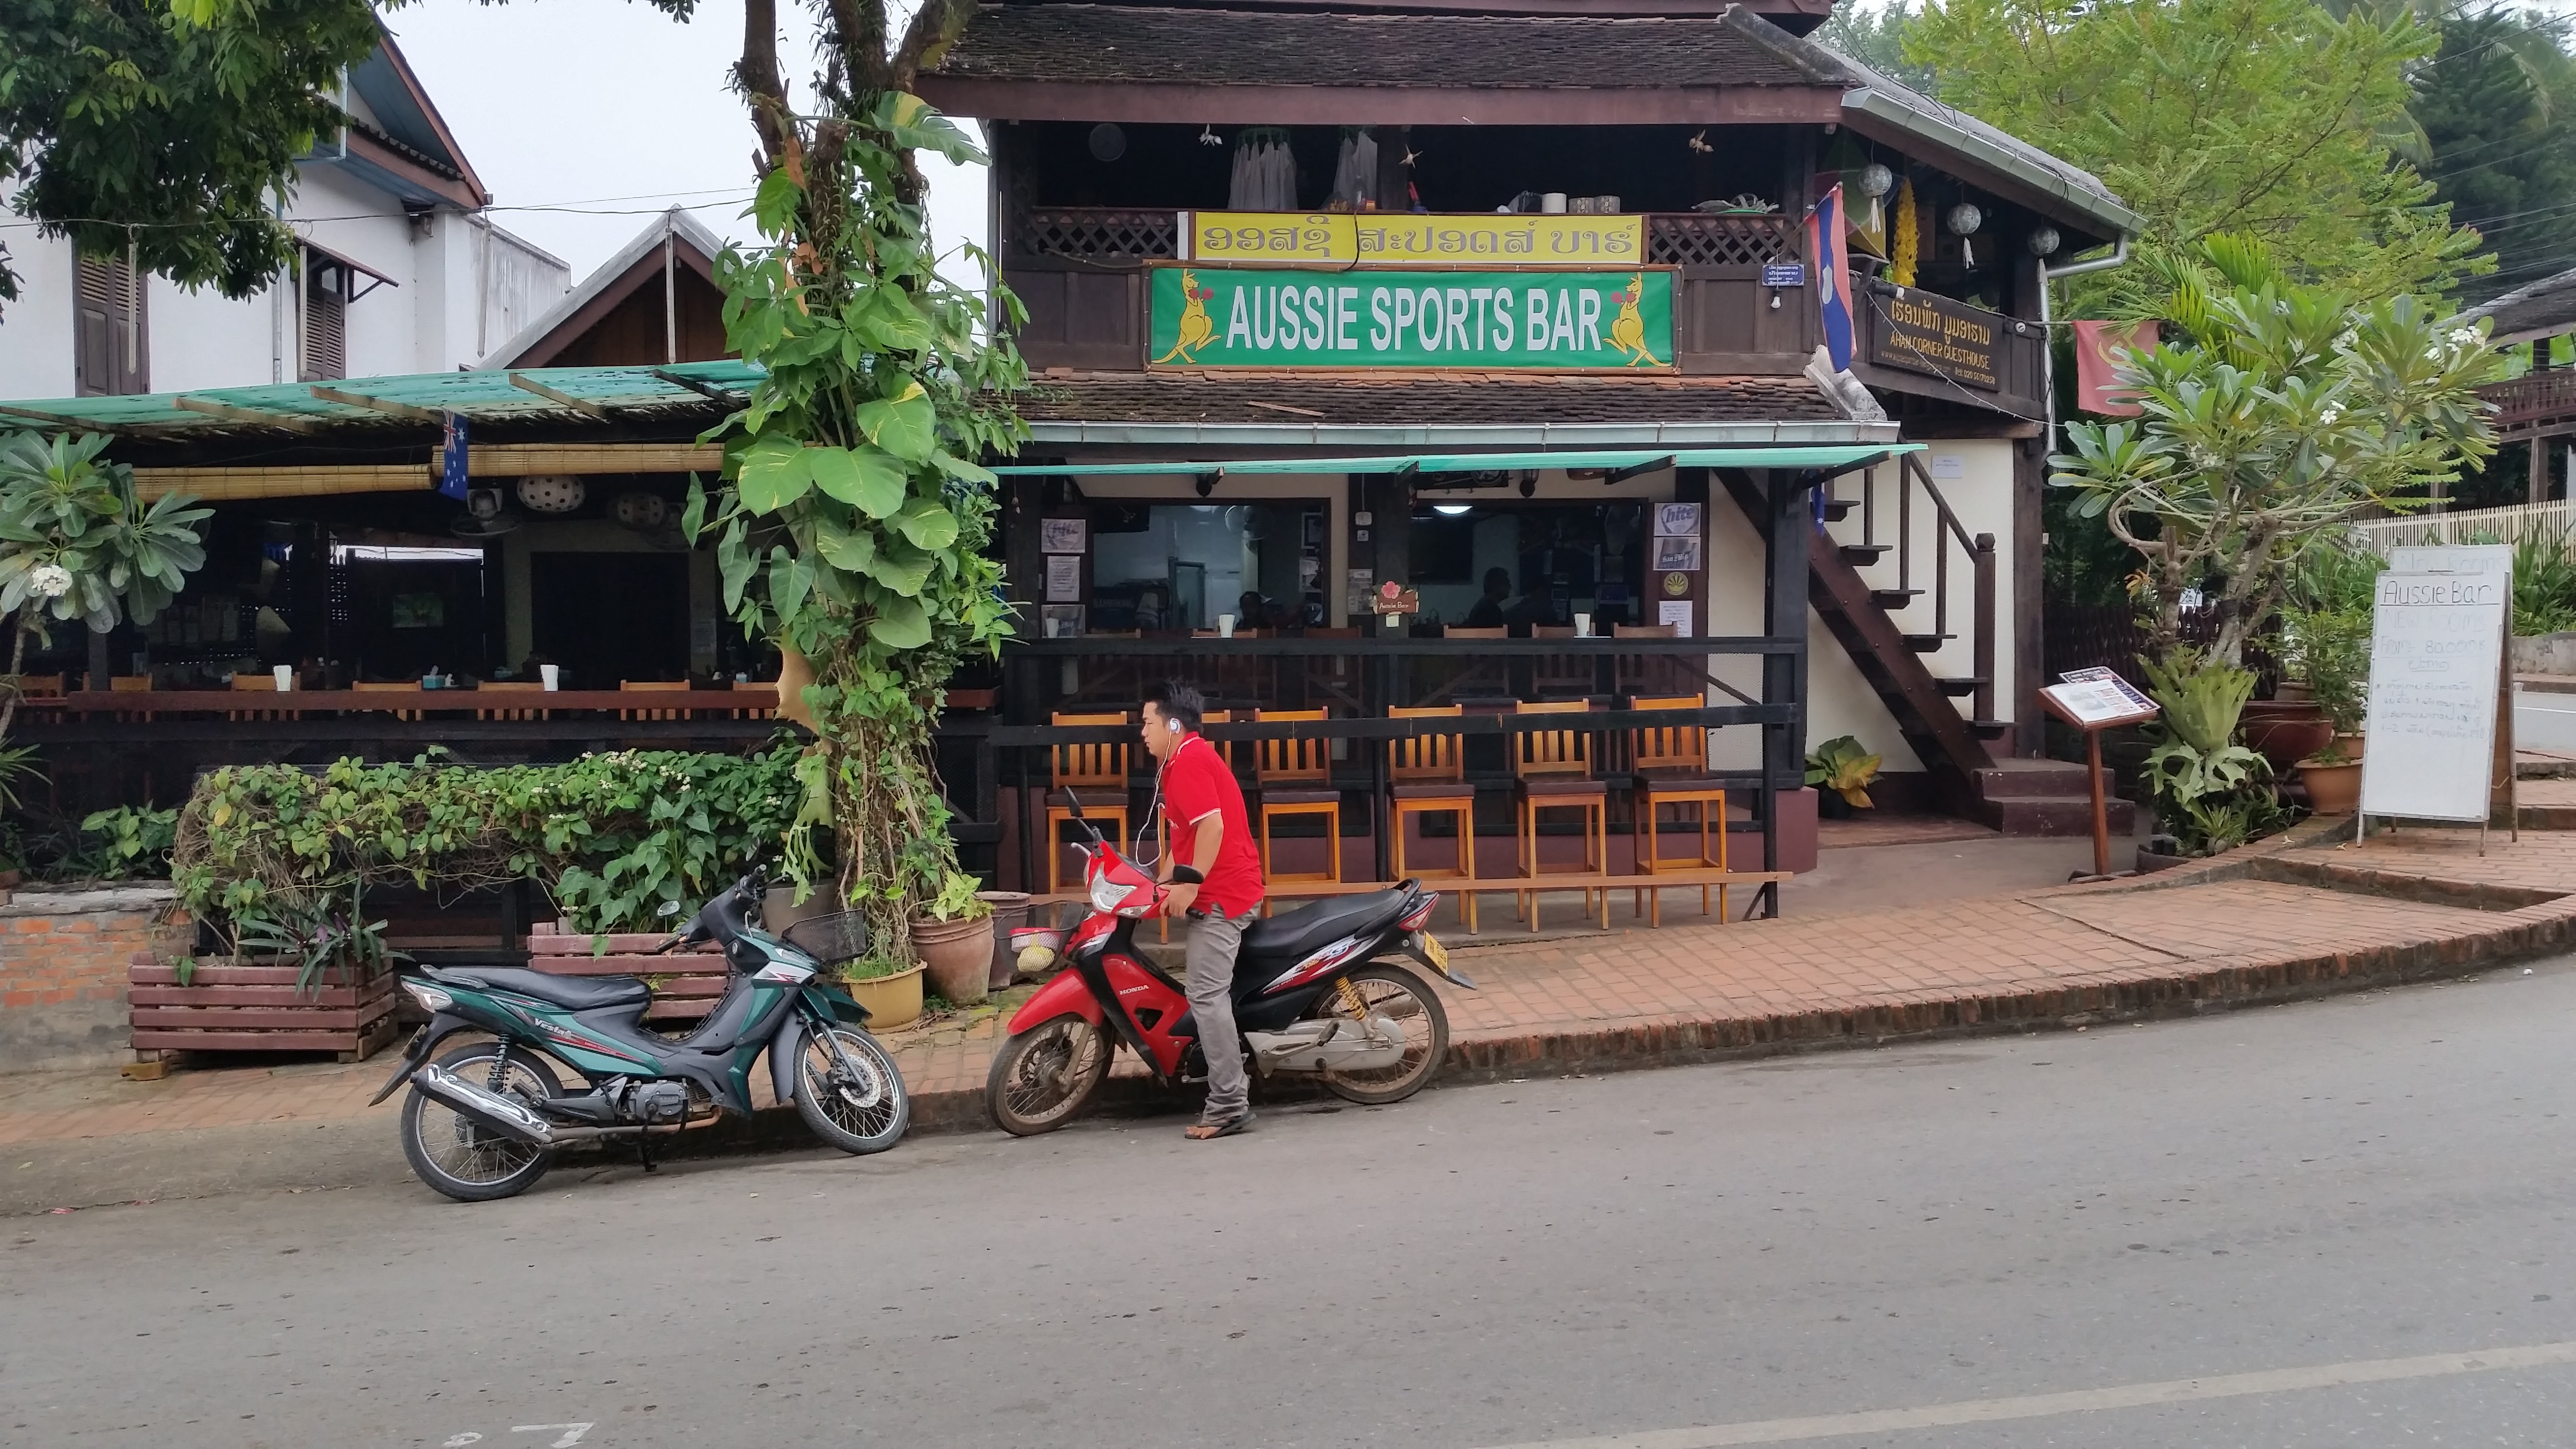 Aussie Sports Bar, Luang Prabang, Laos